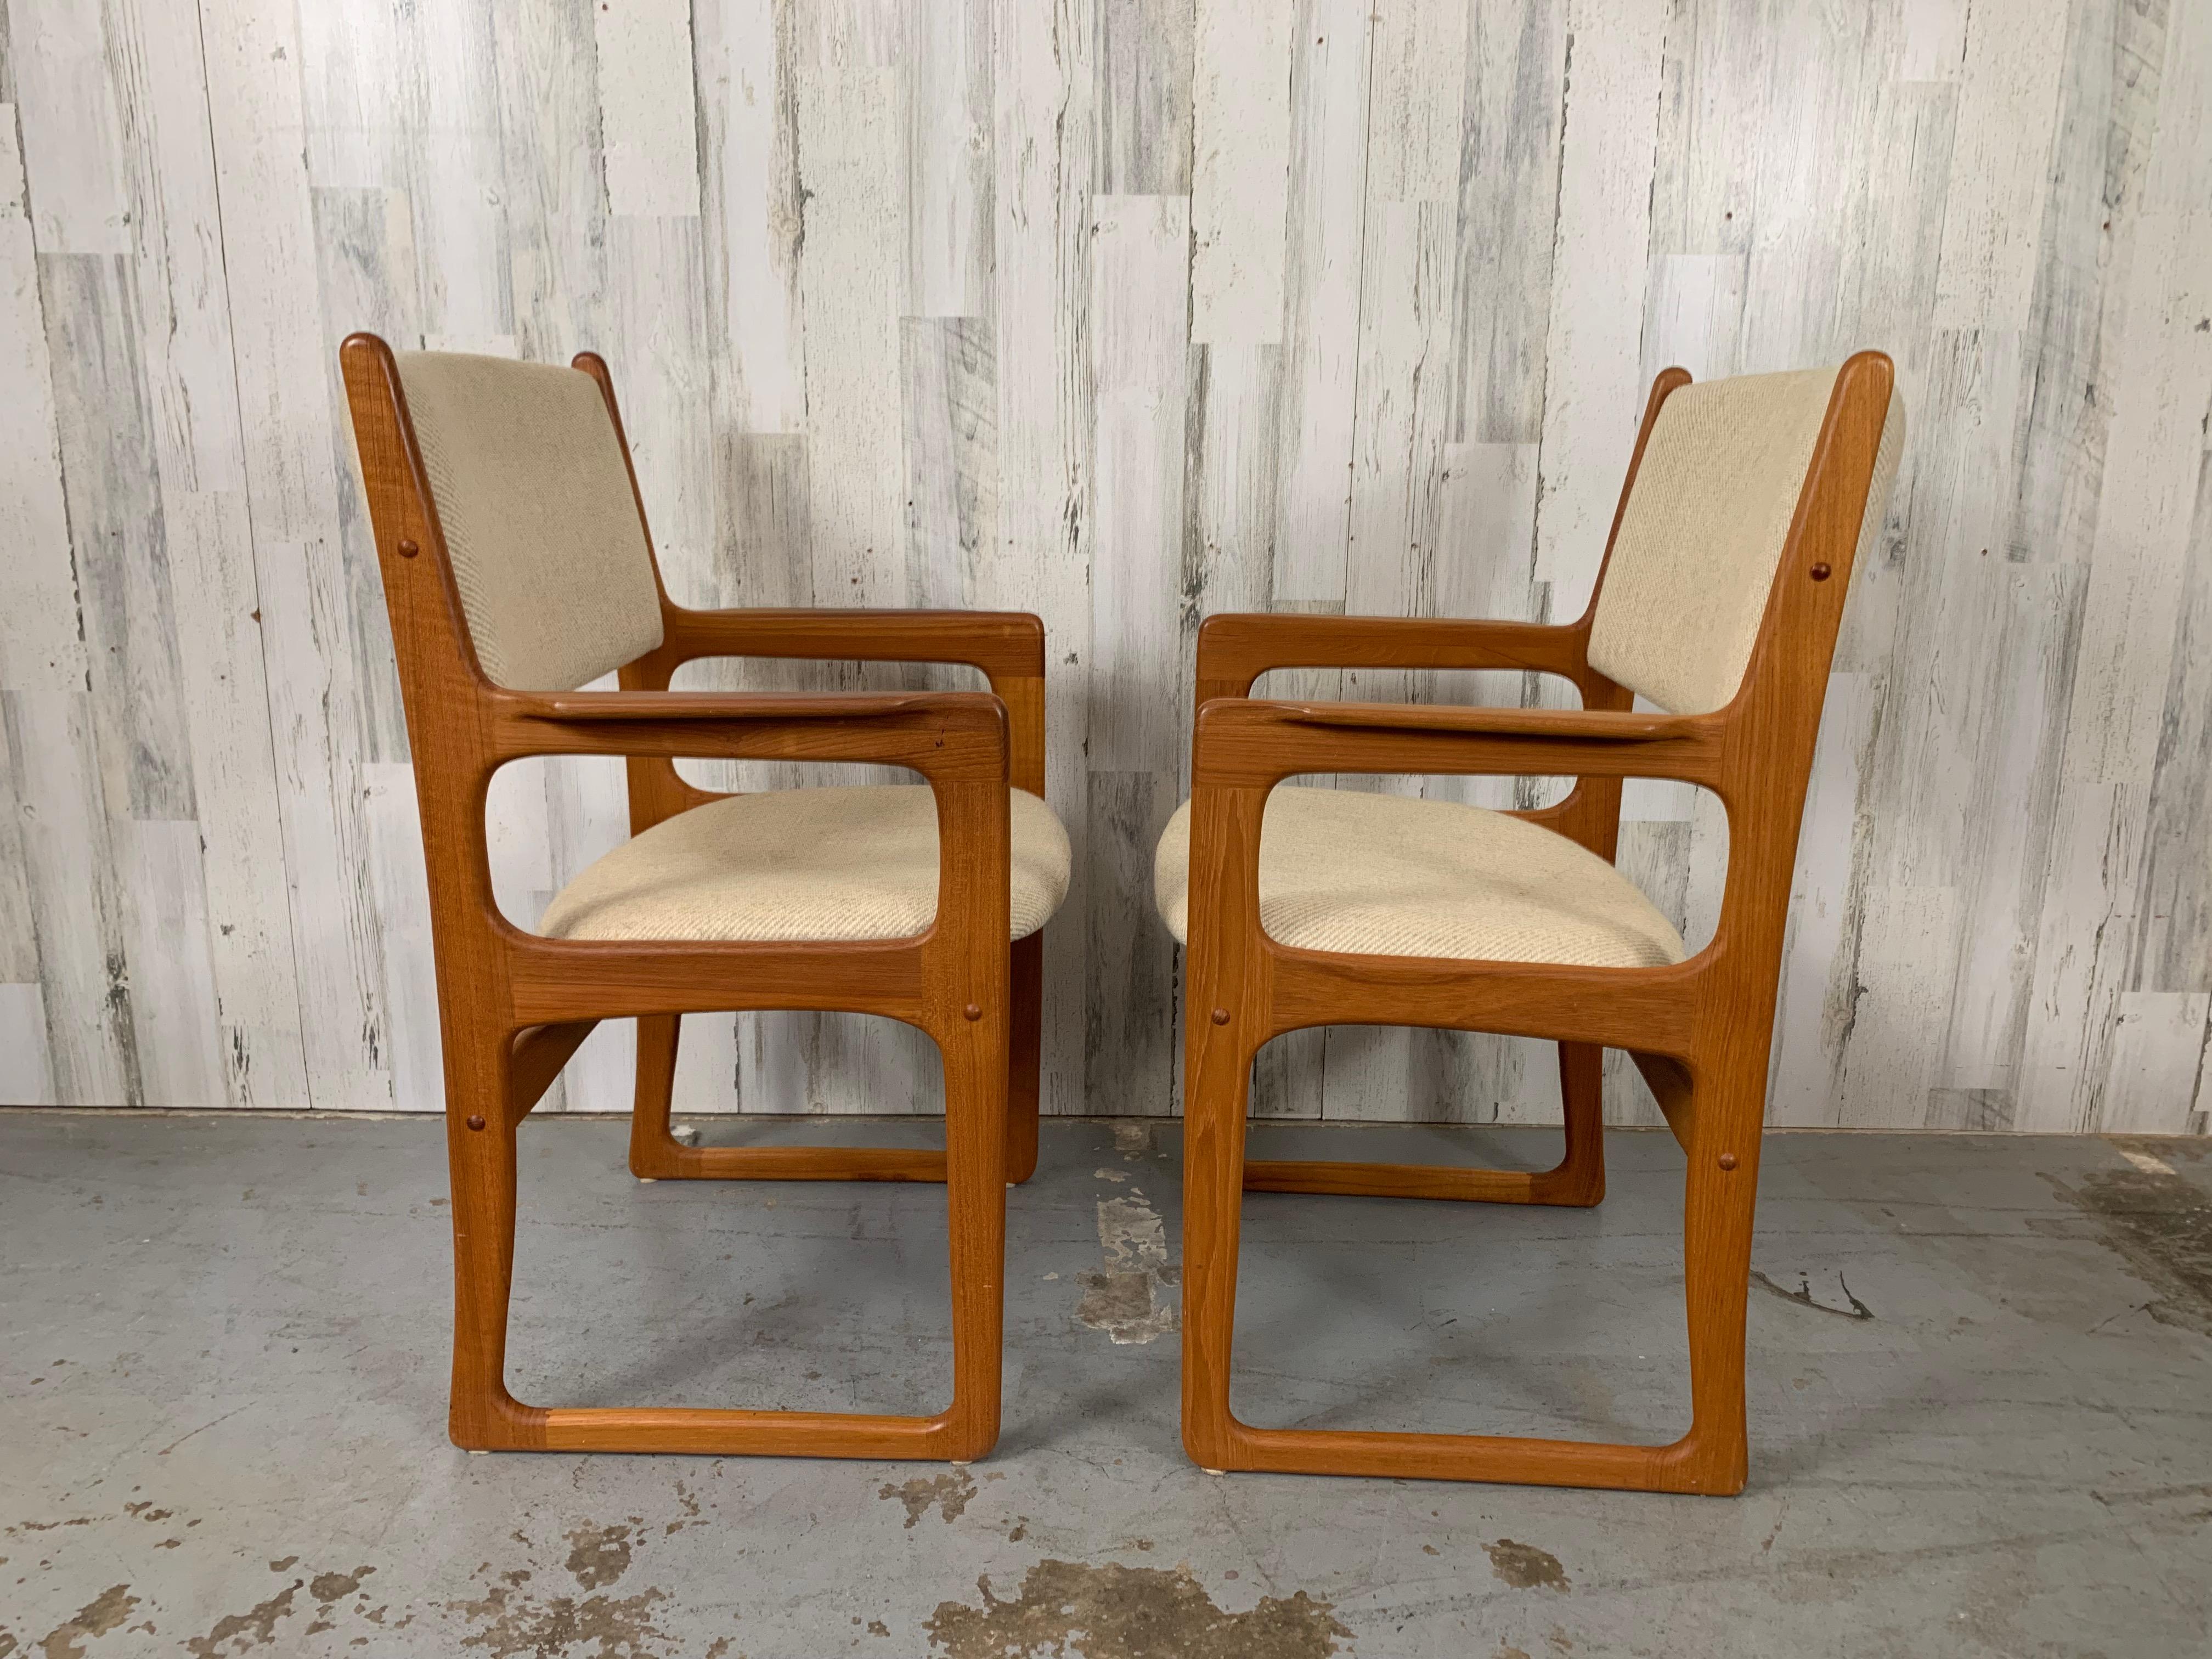 Fauteuils de salle à manger / fauteuils en teck massif à dossier incurvé très confortables dans le style de la modernité danoise.